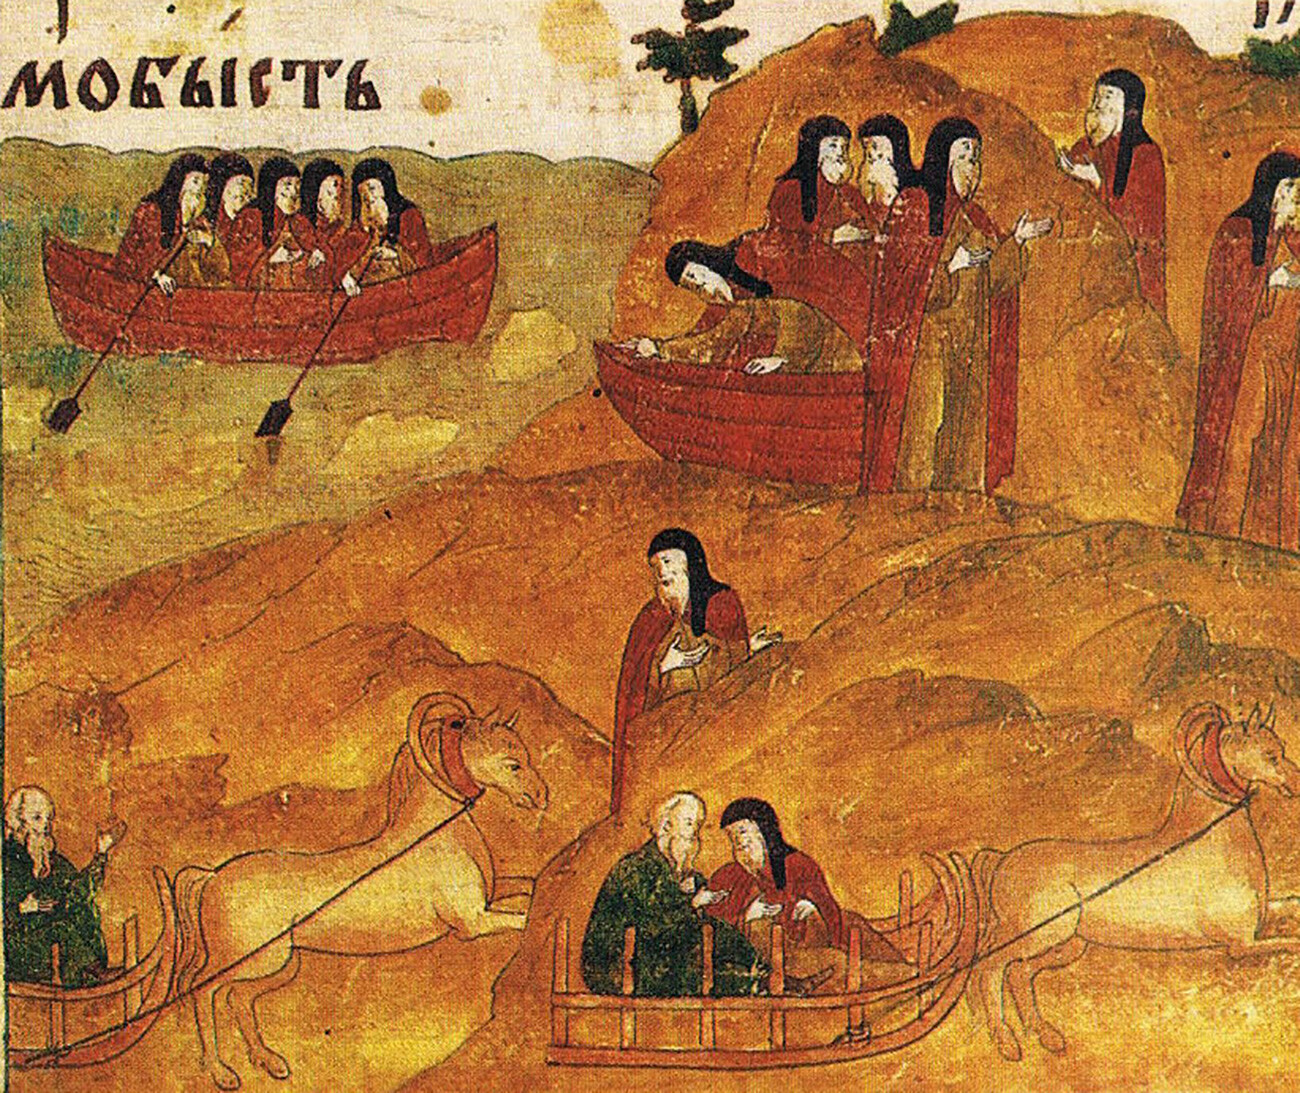 Una miniatura rusa del siglo XVII muestra a gente montada en trineos en verano